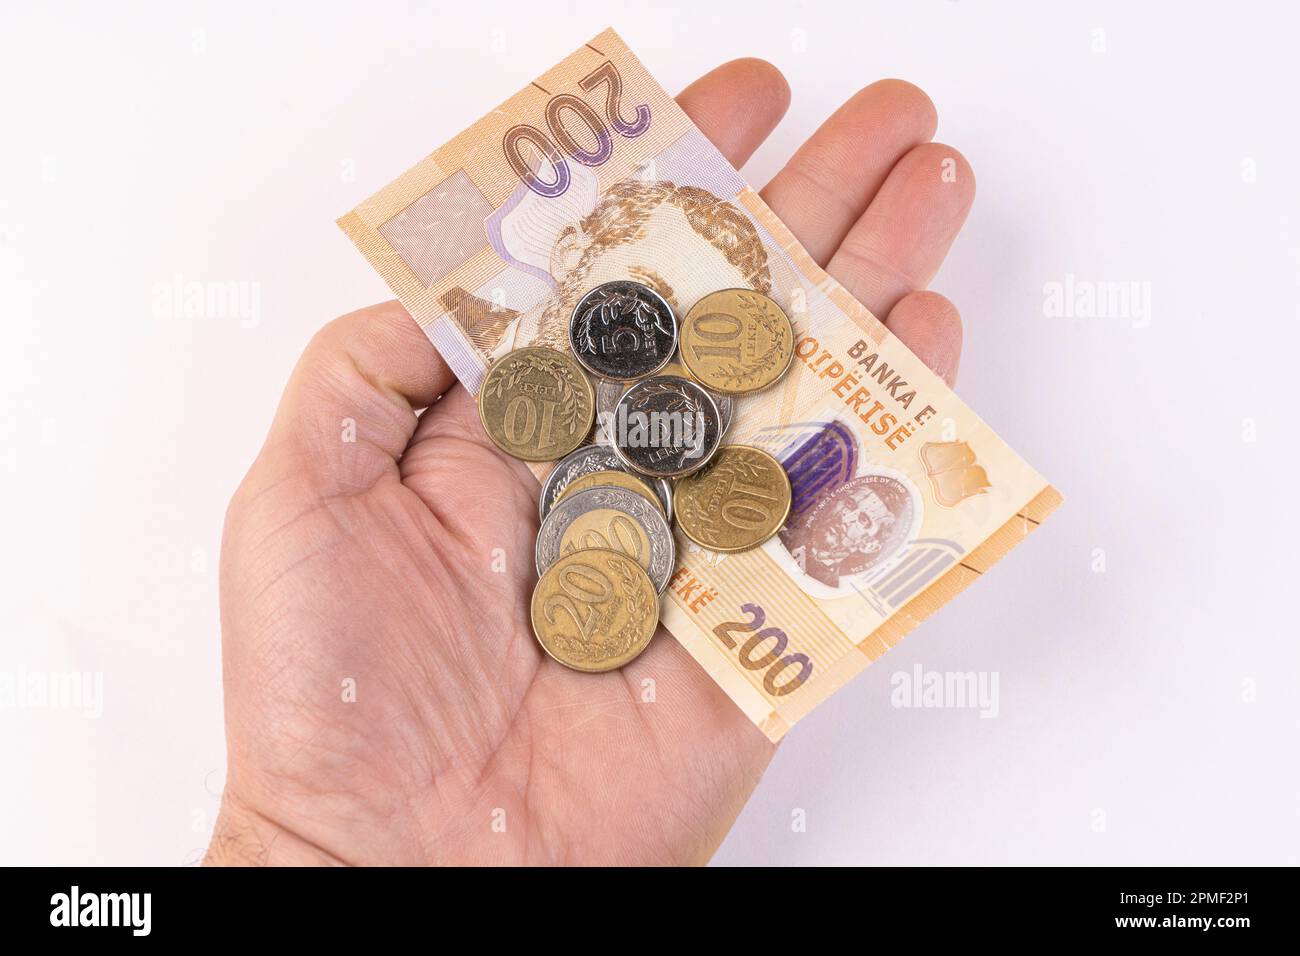 Quelques pièces de monnaie et un billet de banque Lek de monnaie albanaise sur une surface blanche Banque D'Images